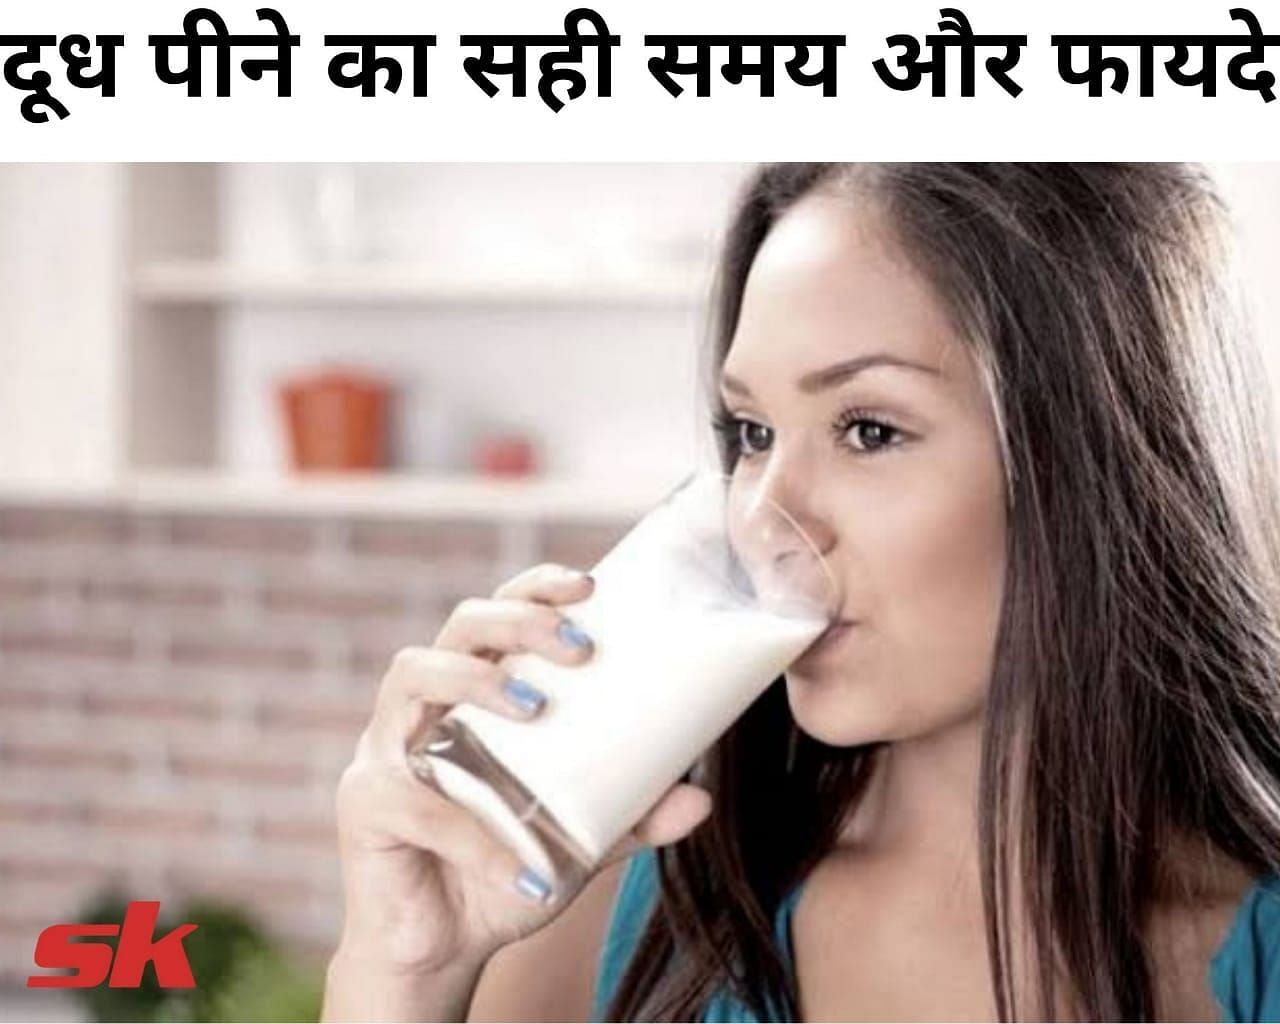 दूध पीने का सही समय और फायदे (फोटो - sportskeedaहिन्दी)